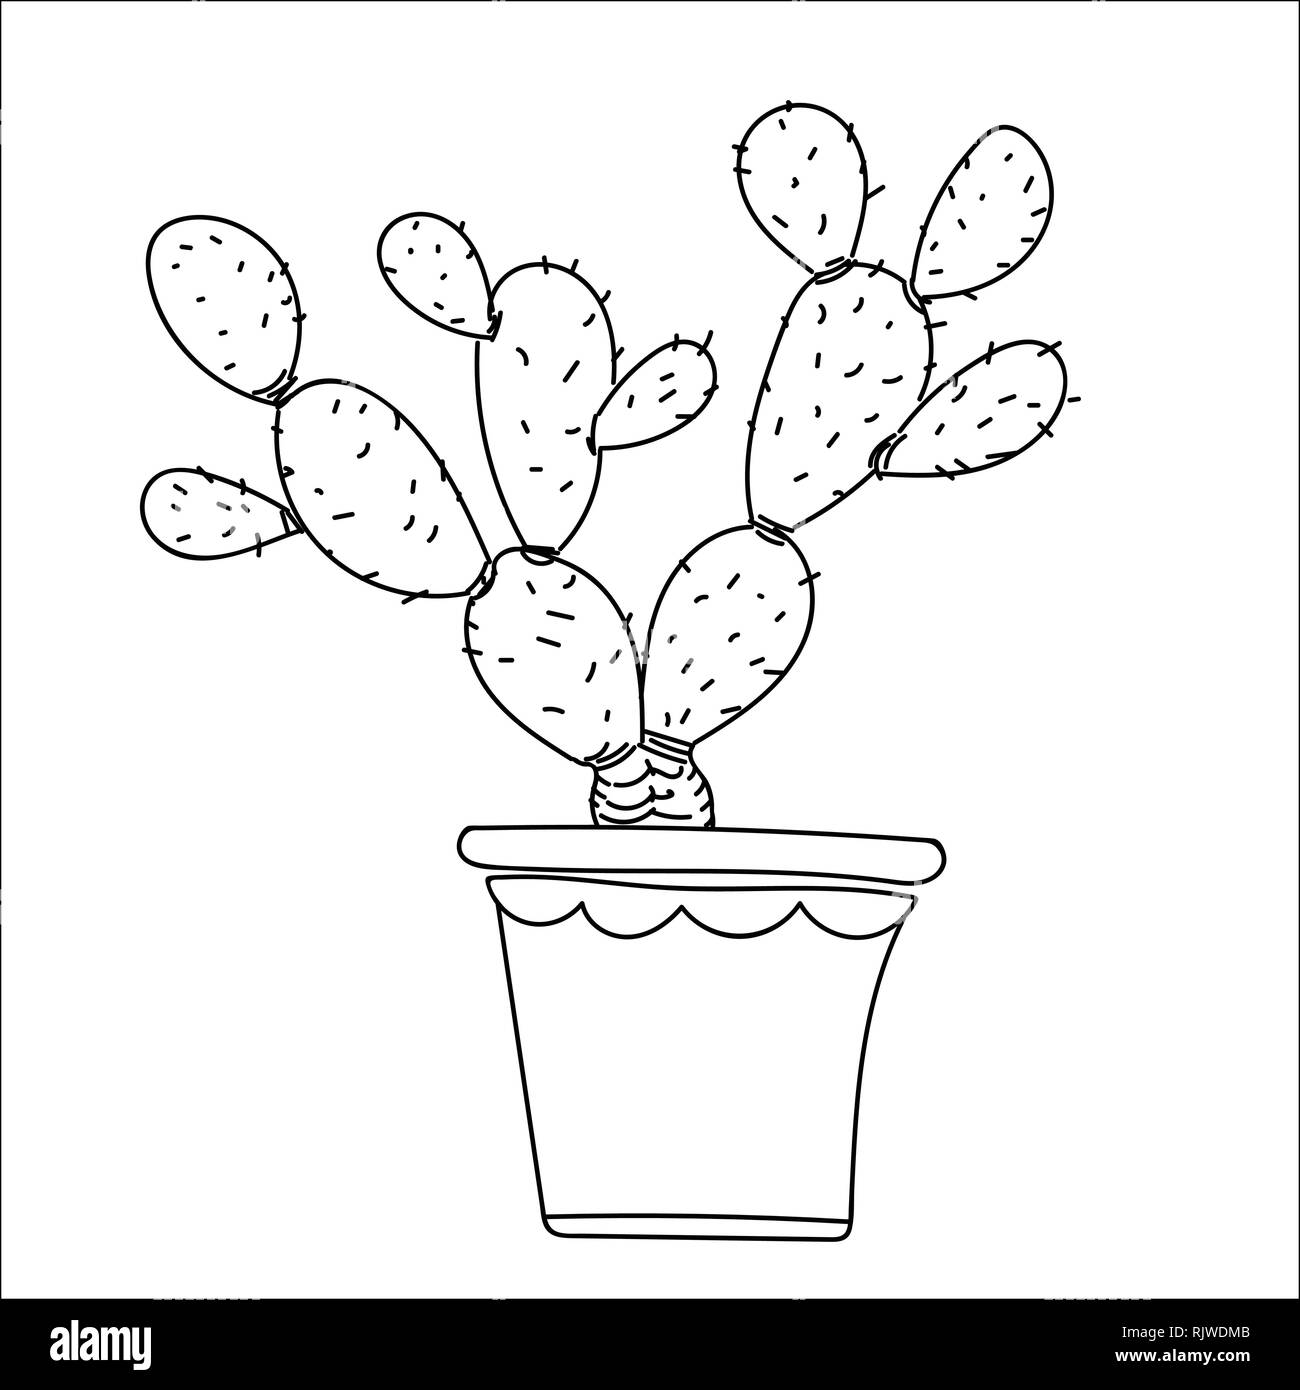 Cactus, aislar estilo dibujados a mano sobre fondo blanco, para los niños, los niños libro para colorear, los conceptos de educación y vegetales. Ilustración vectorial Ilustración del Vector